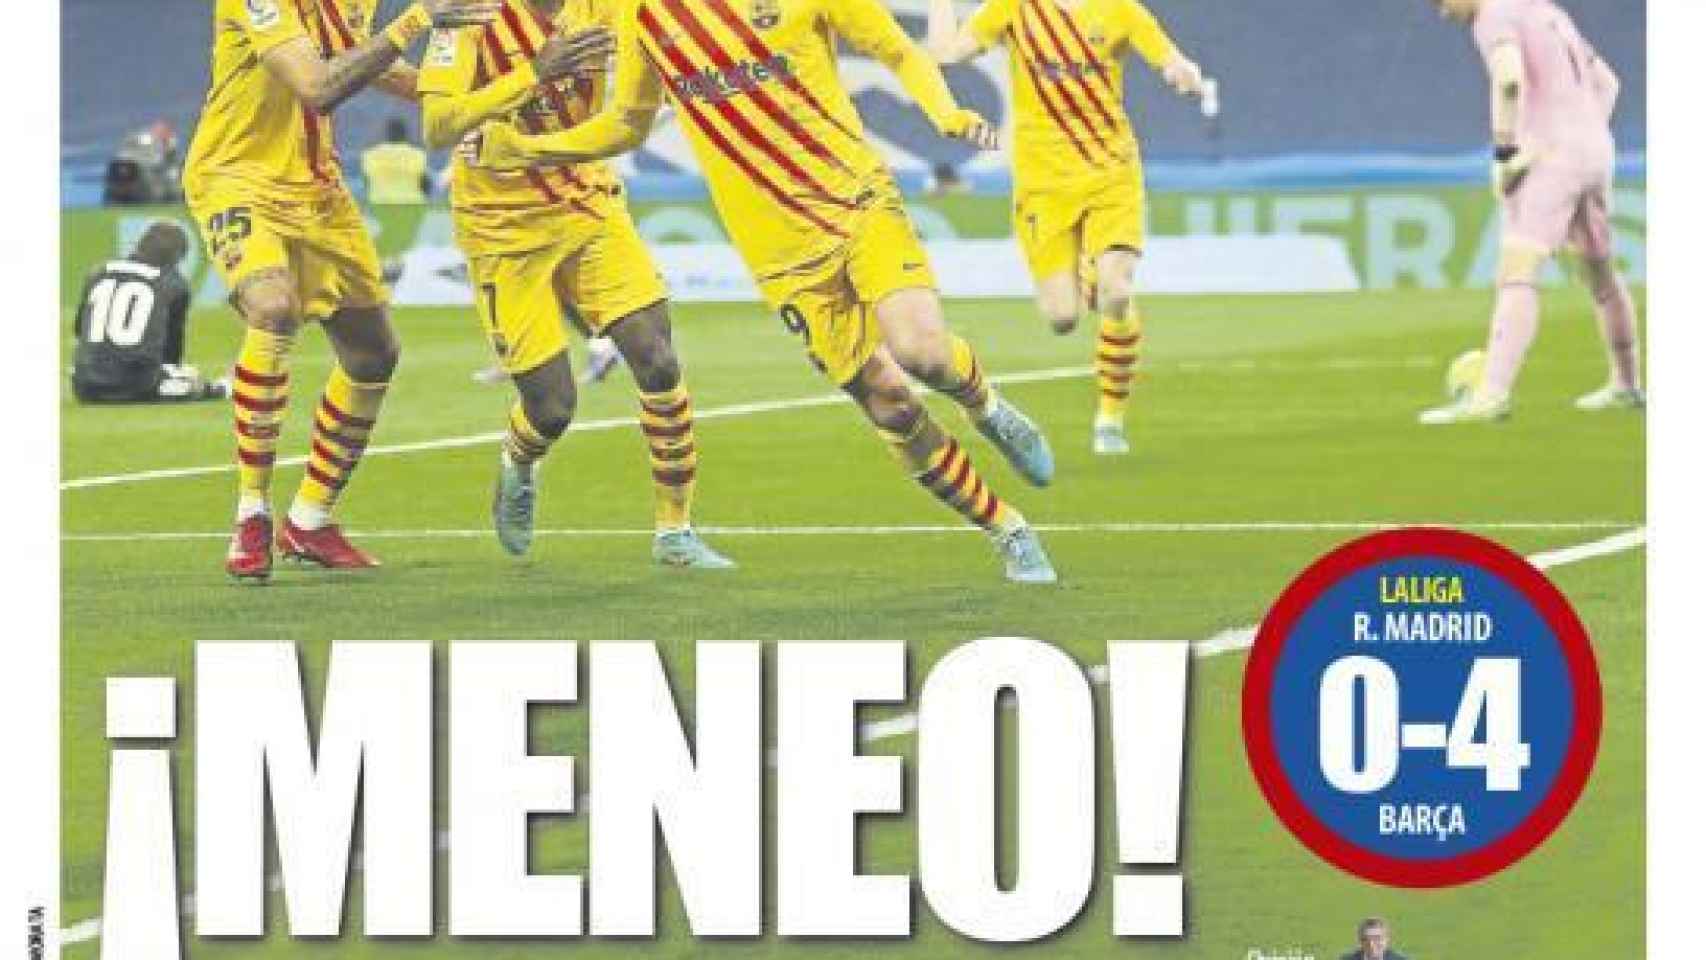 La portada del periódico Mundo Deportivo (lunes, 21 de marzo del 2022): ¡Meneo!